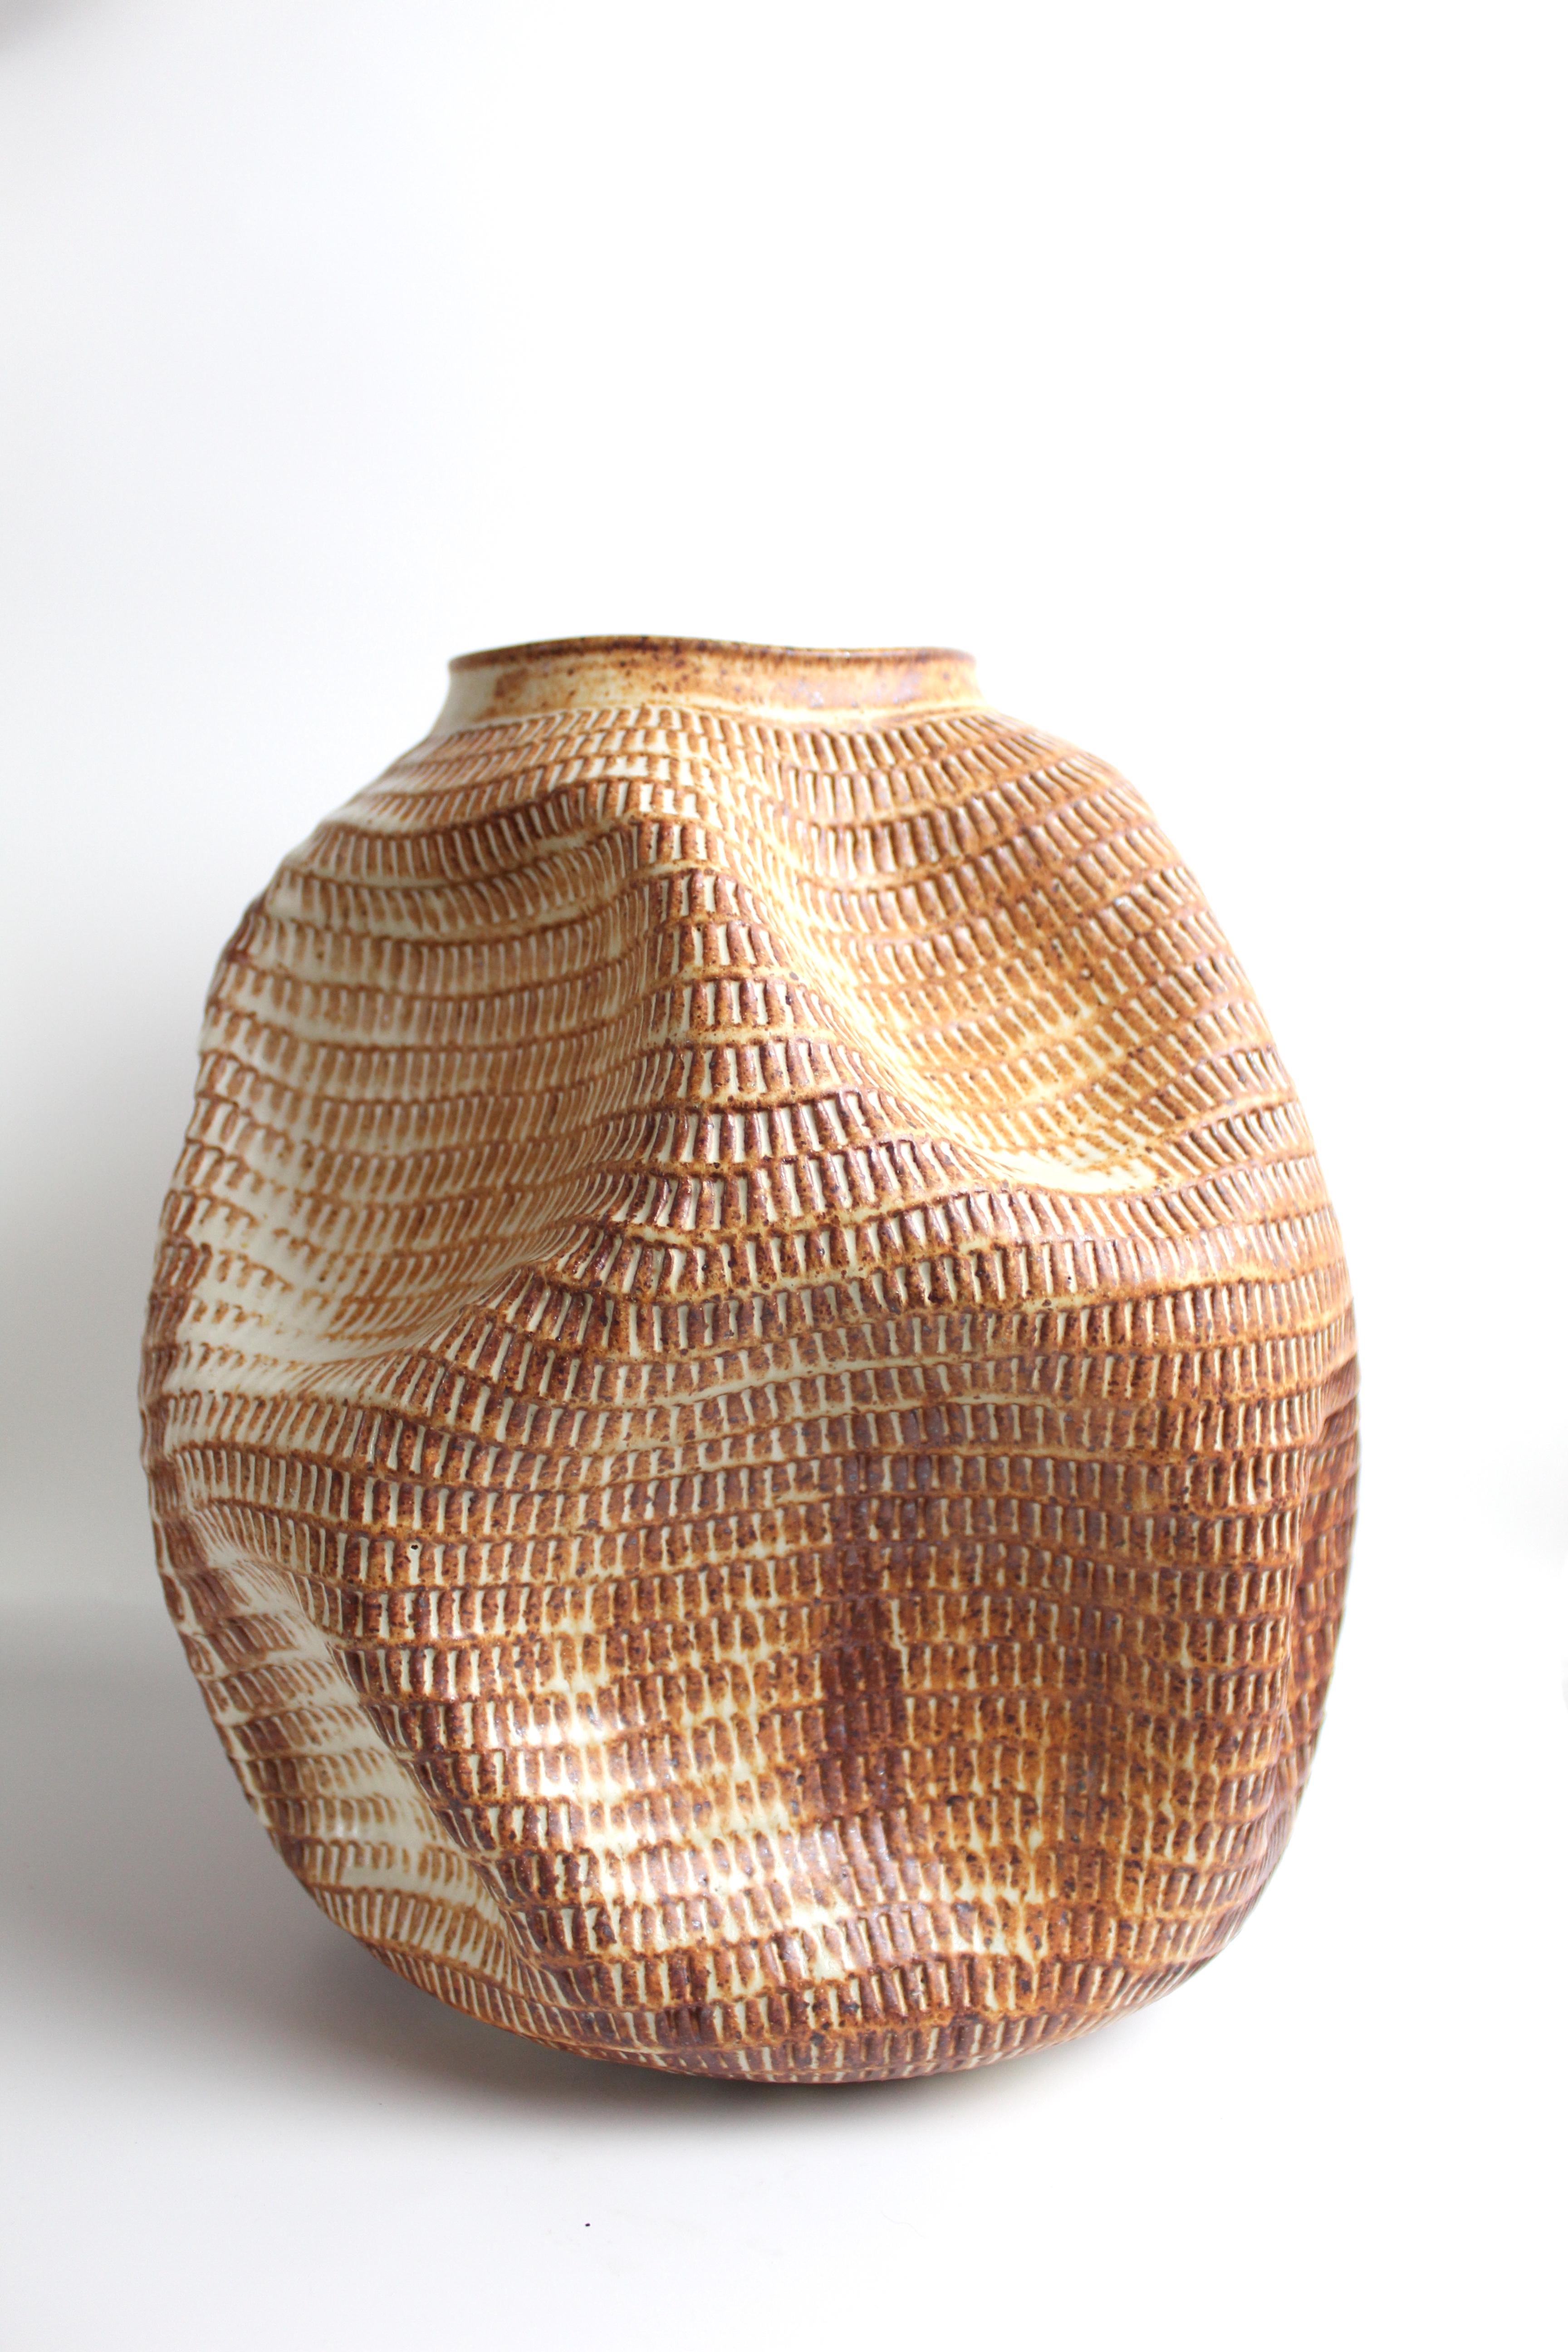 American Skoby Joe Handmade Terra Cotta Brown Ceramic Vase Mid-Century Modern Vessel